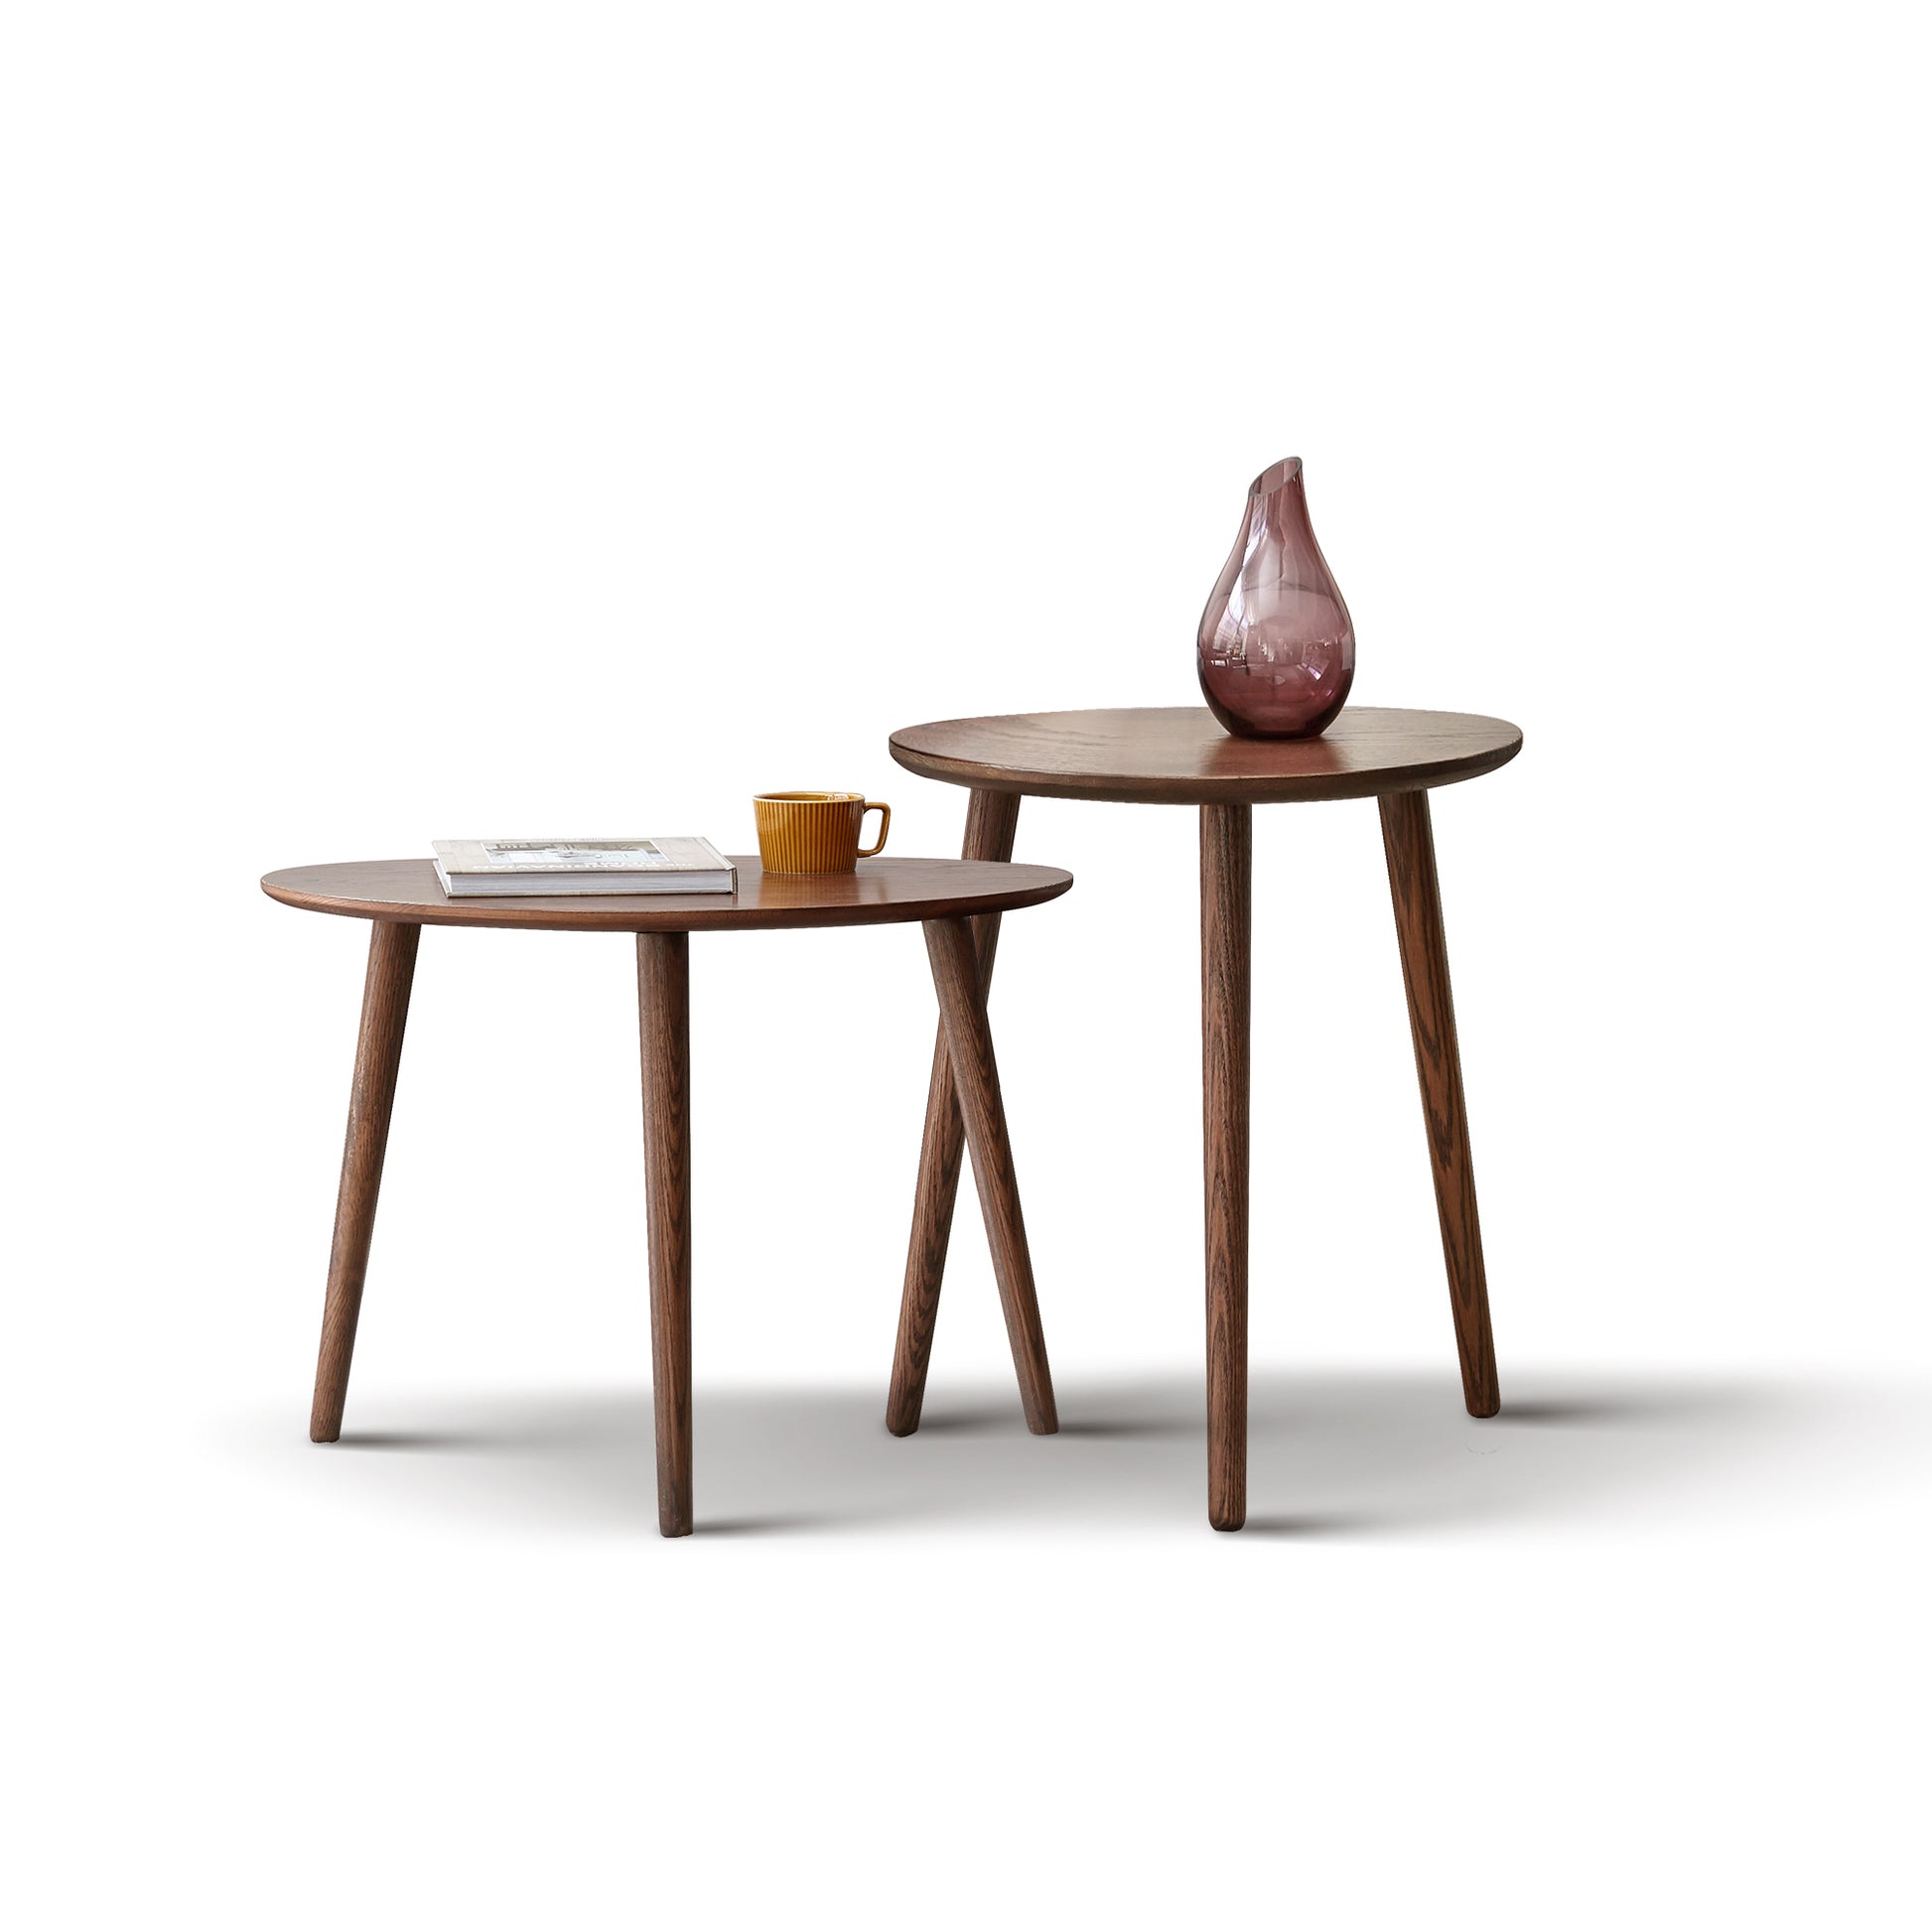 100% Solid Oak Wood Pebble Shape Side Table